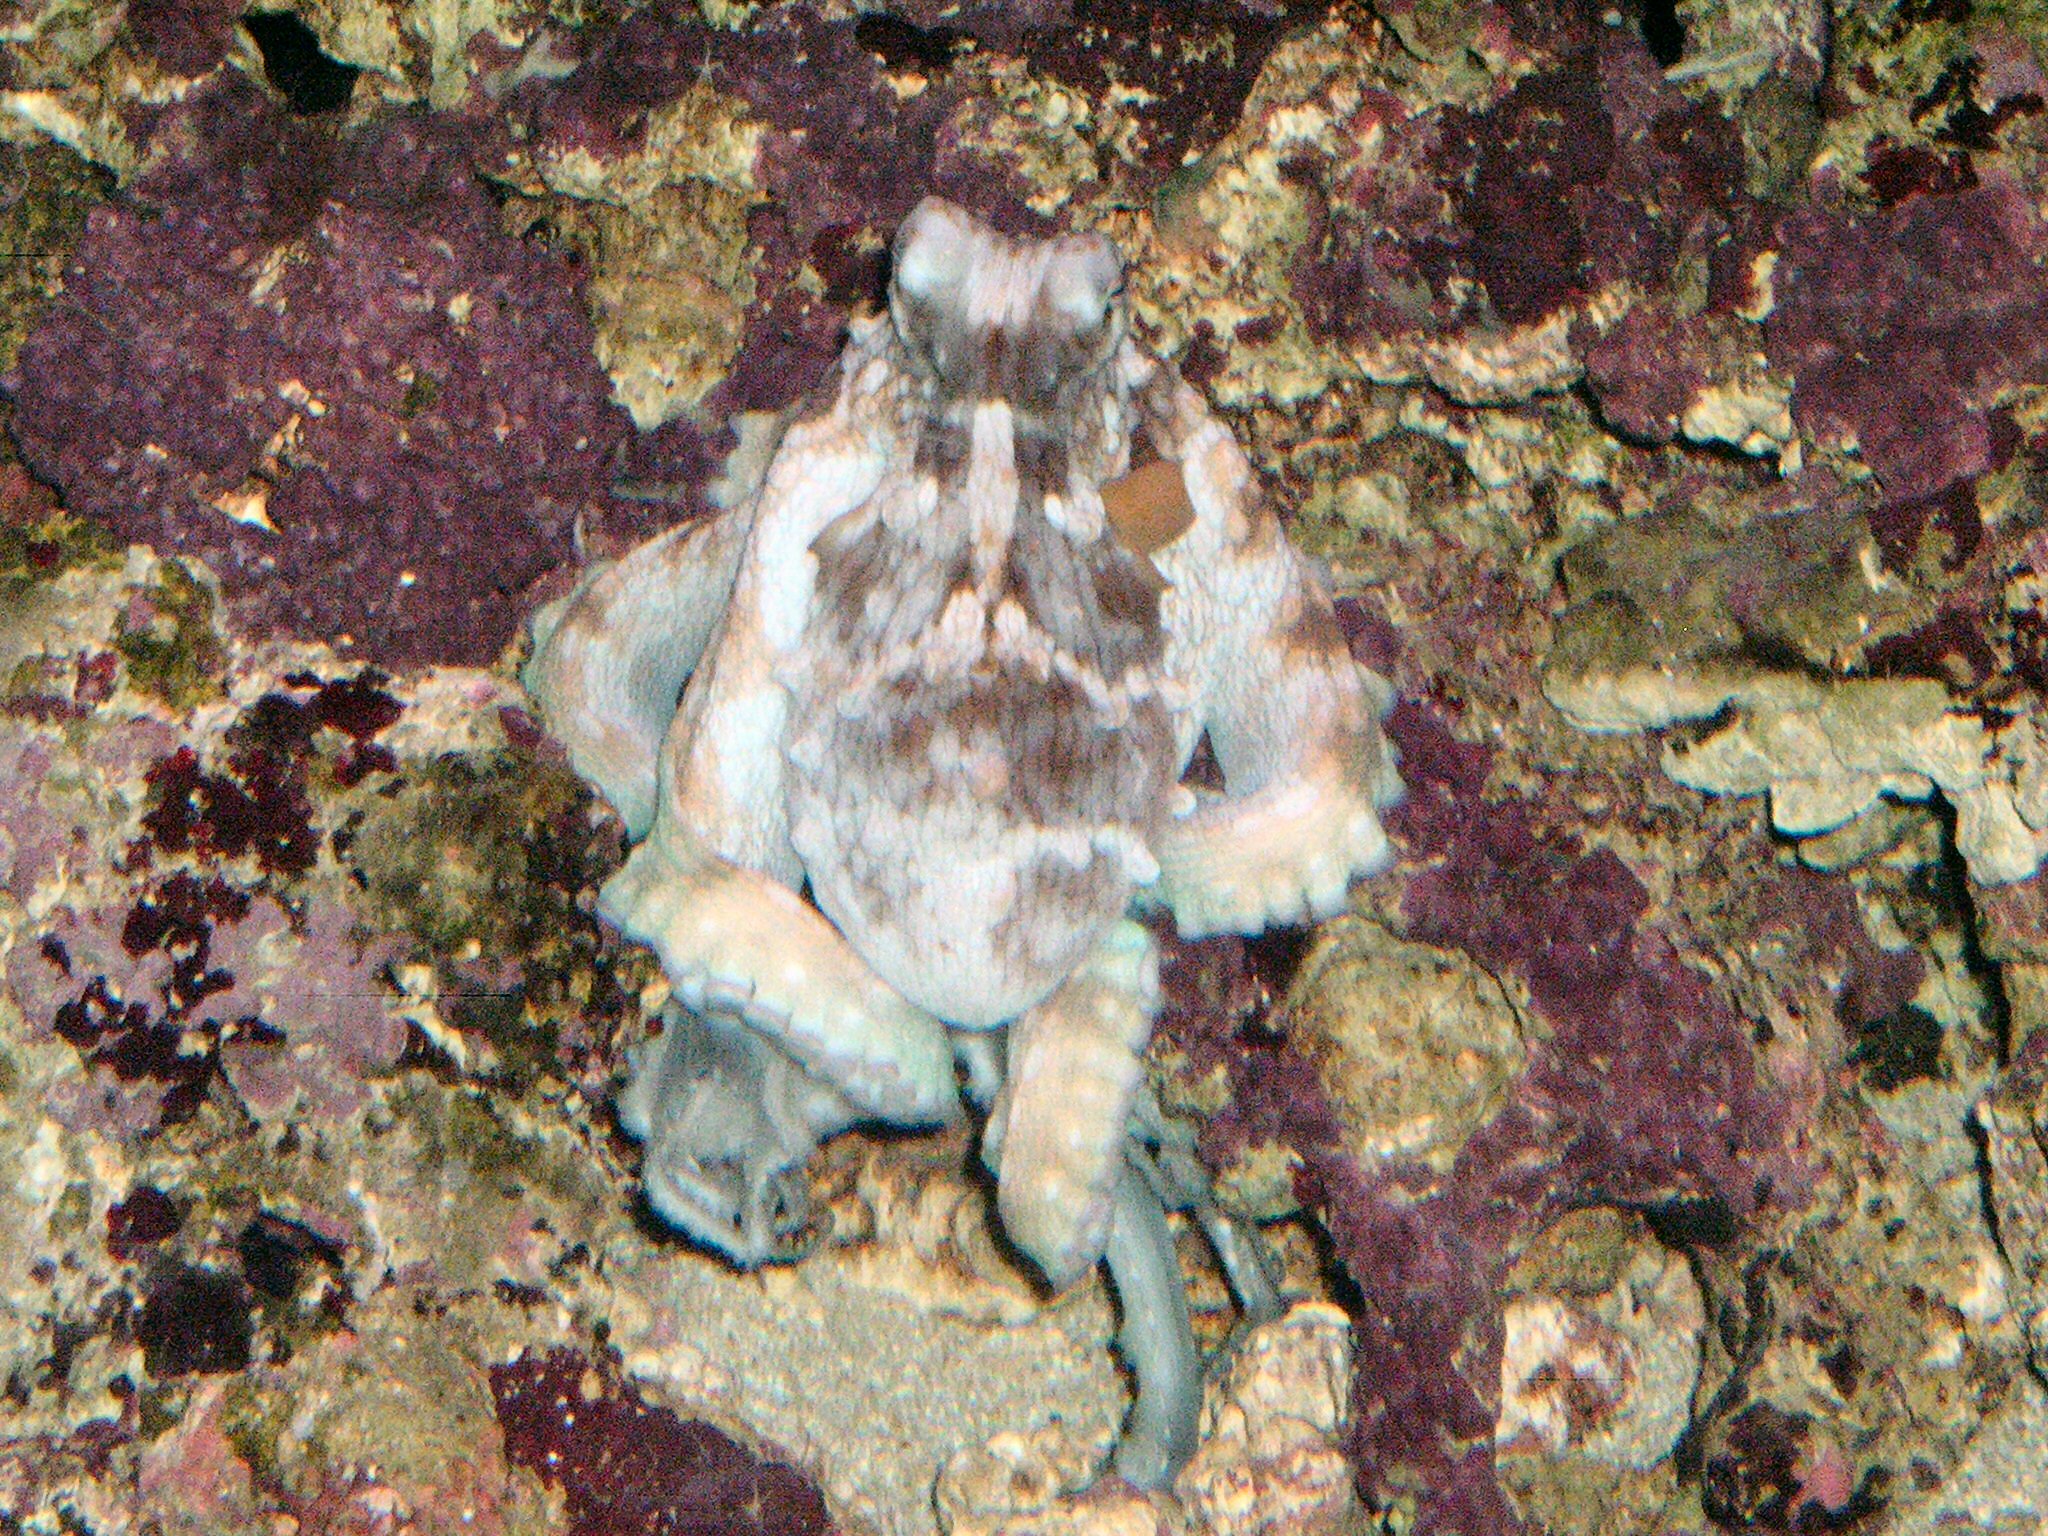 waikiki aquarium octopus.jpg